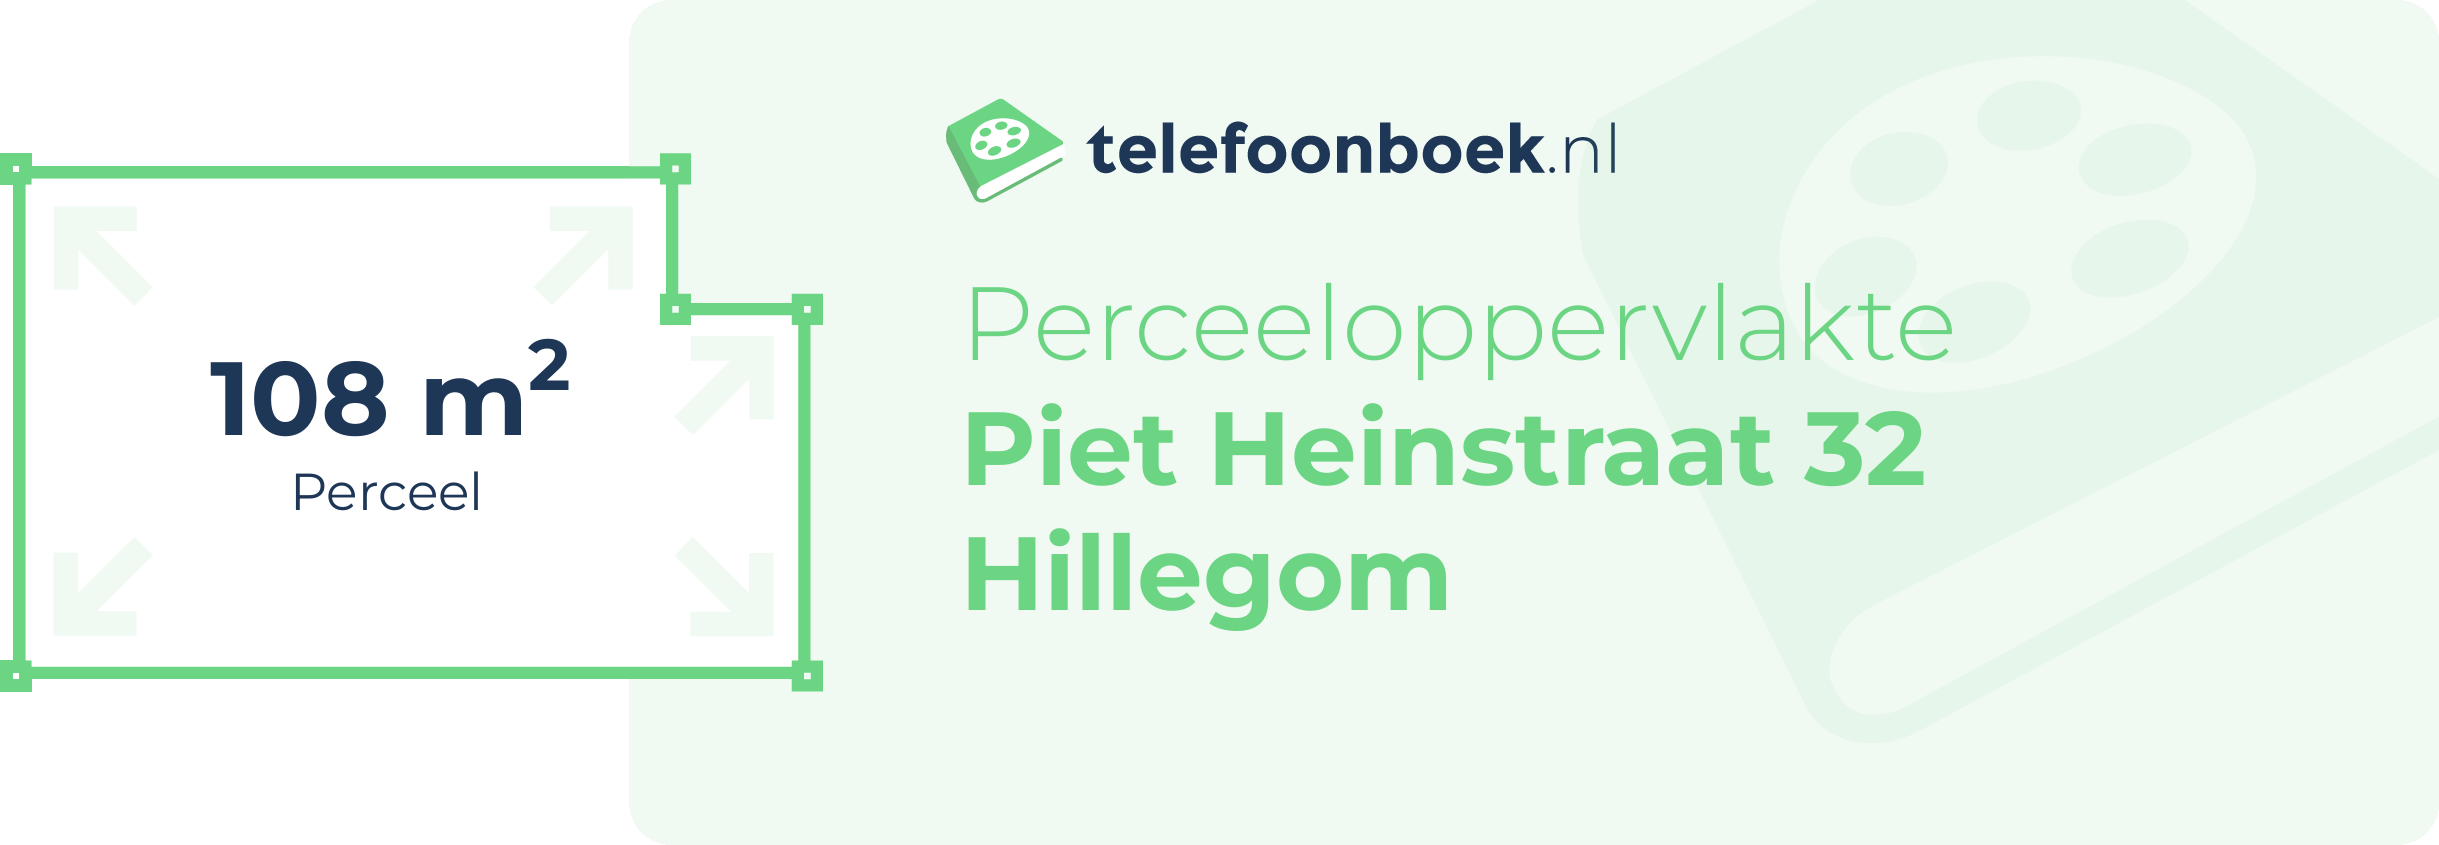 Perceeloppervlakte Piet Heinstraat 32 Hillegom